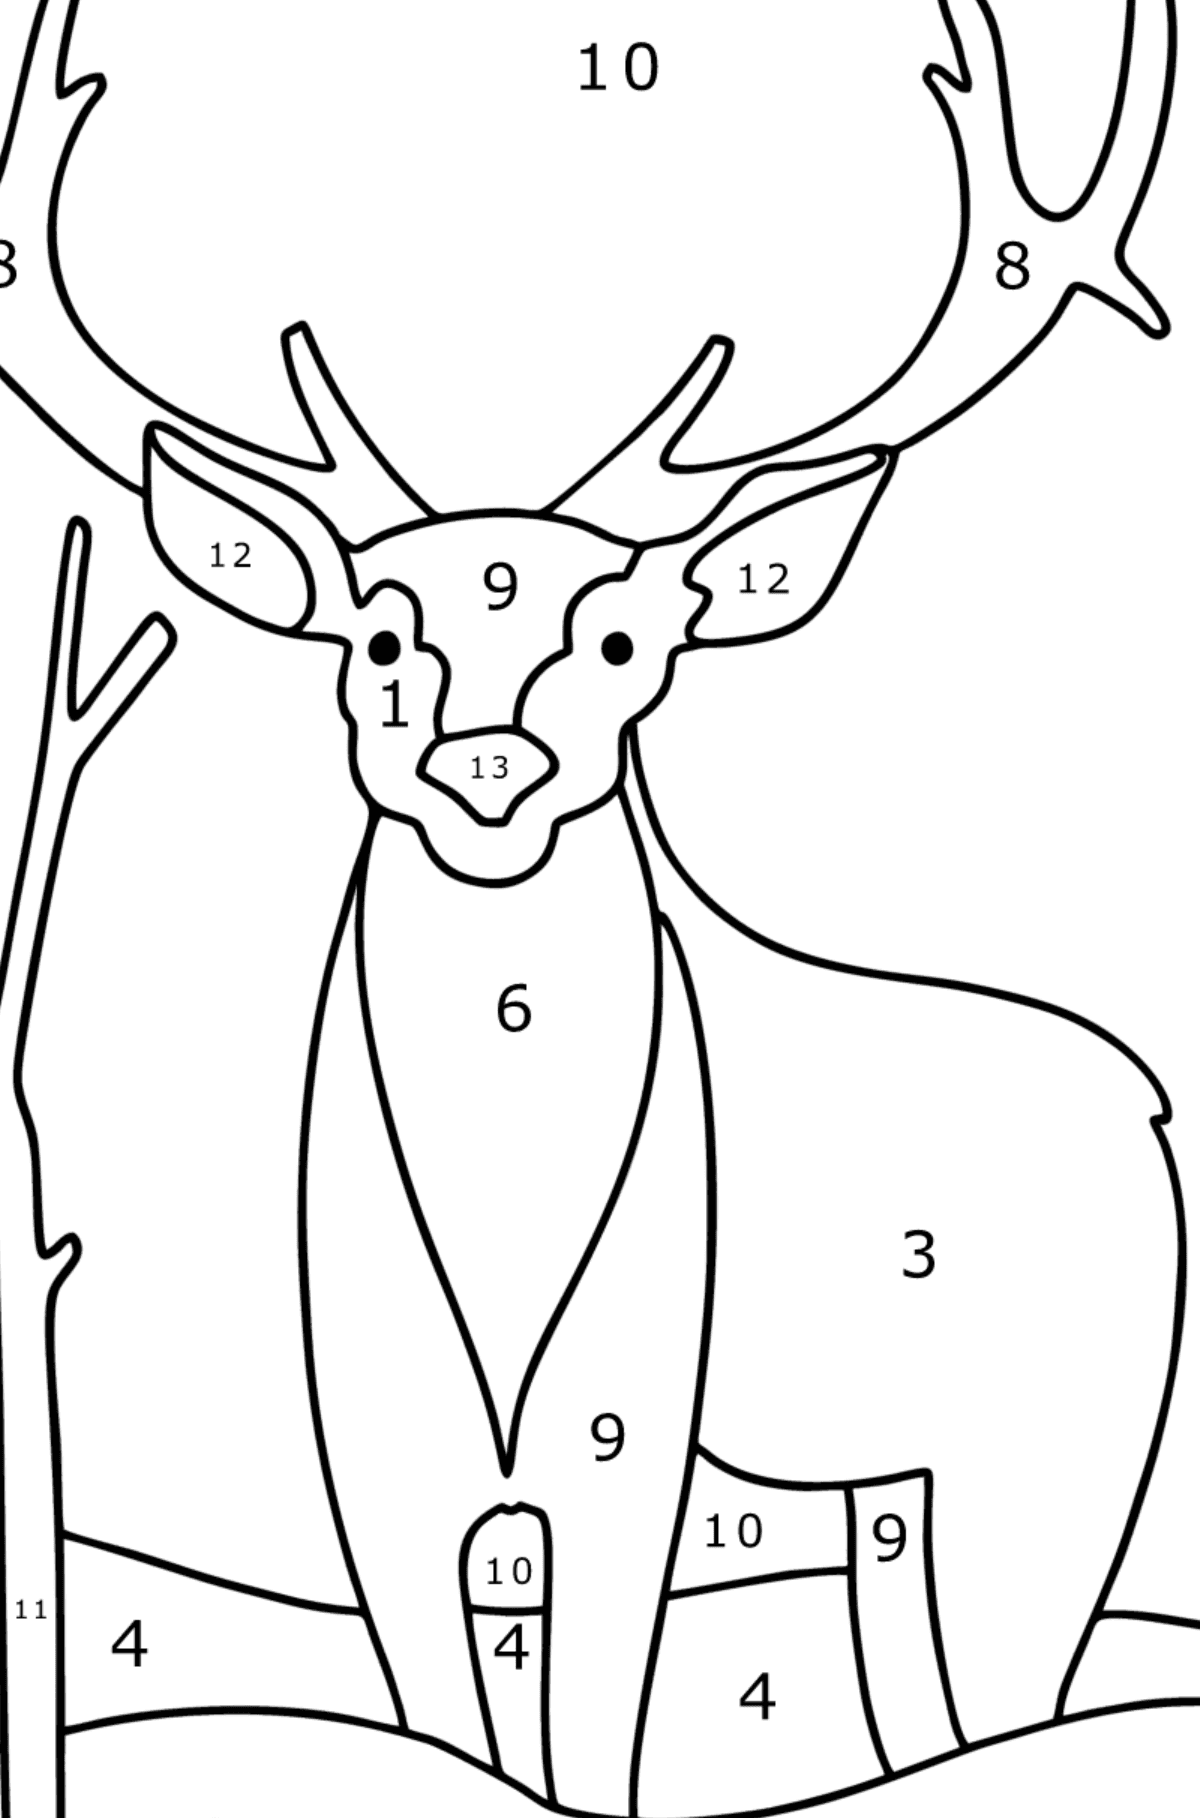 Kış ormandaki geyik boyama sayfası - Sayılarla Boyama çocuklar için